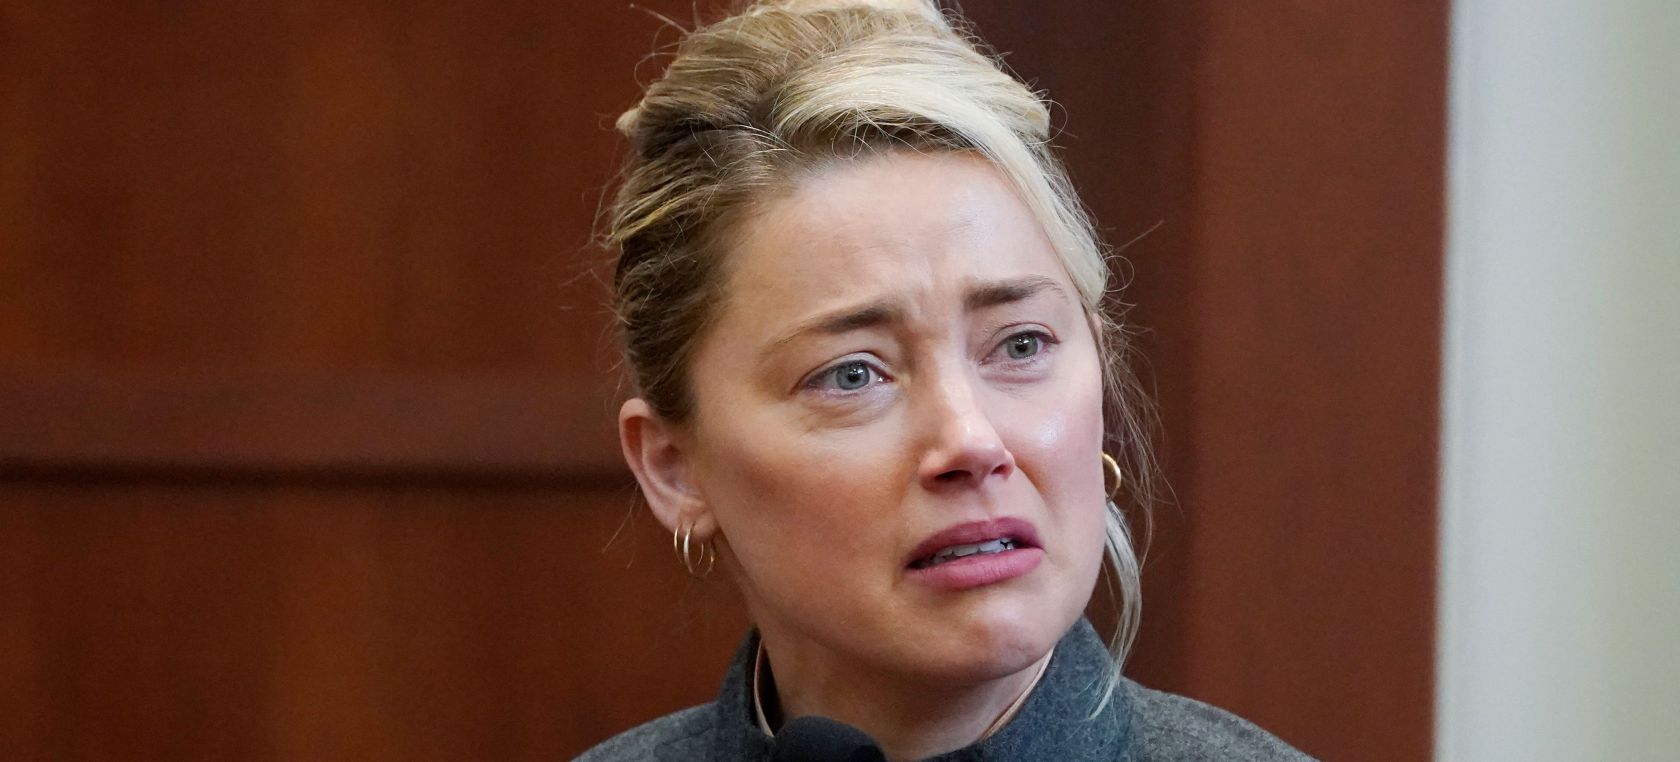 Amber Heard revela en el juicio por qué le pidió el divorcio a Johnny Depp: “No hubiese sobrevivido”